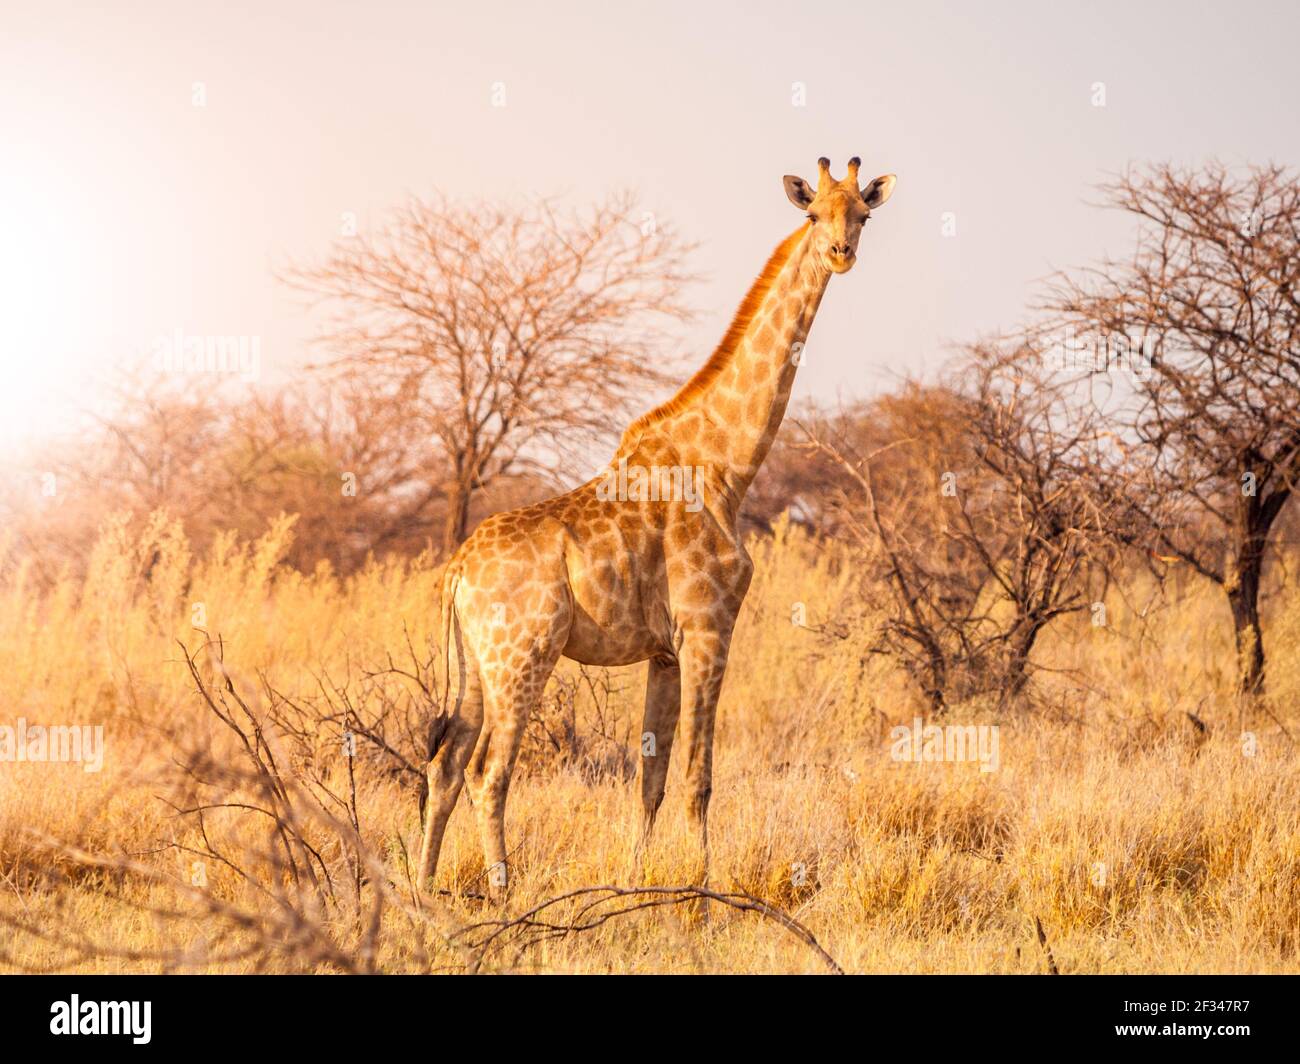 Cute giraffe in african savanna Stock Photo